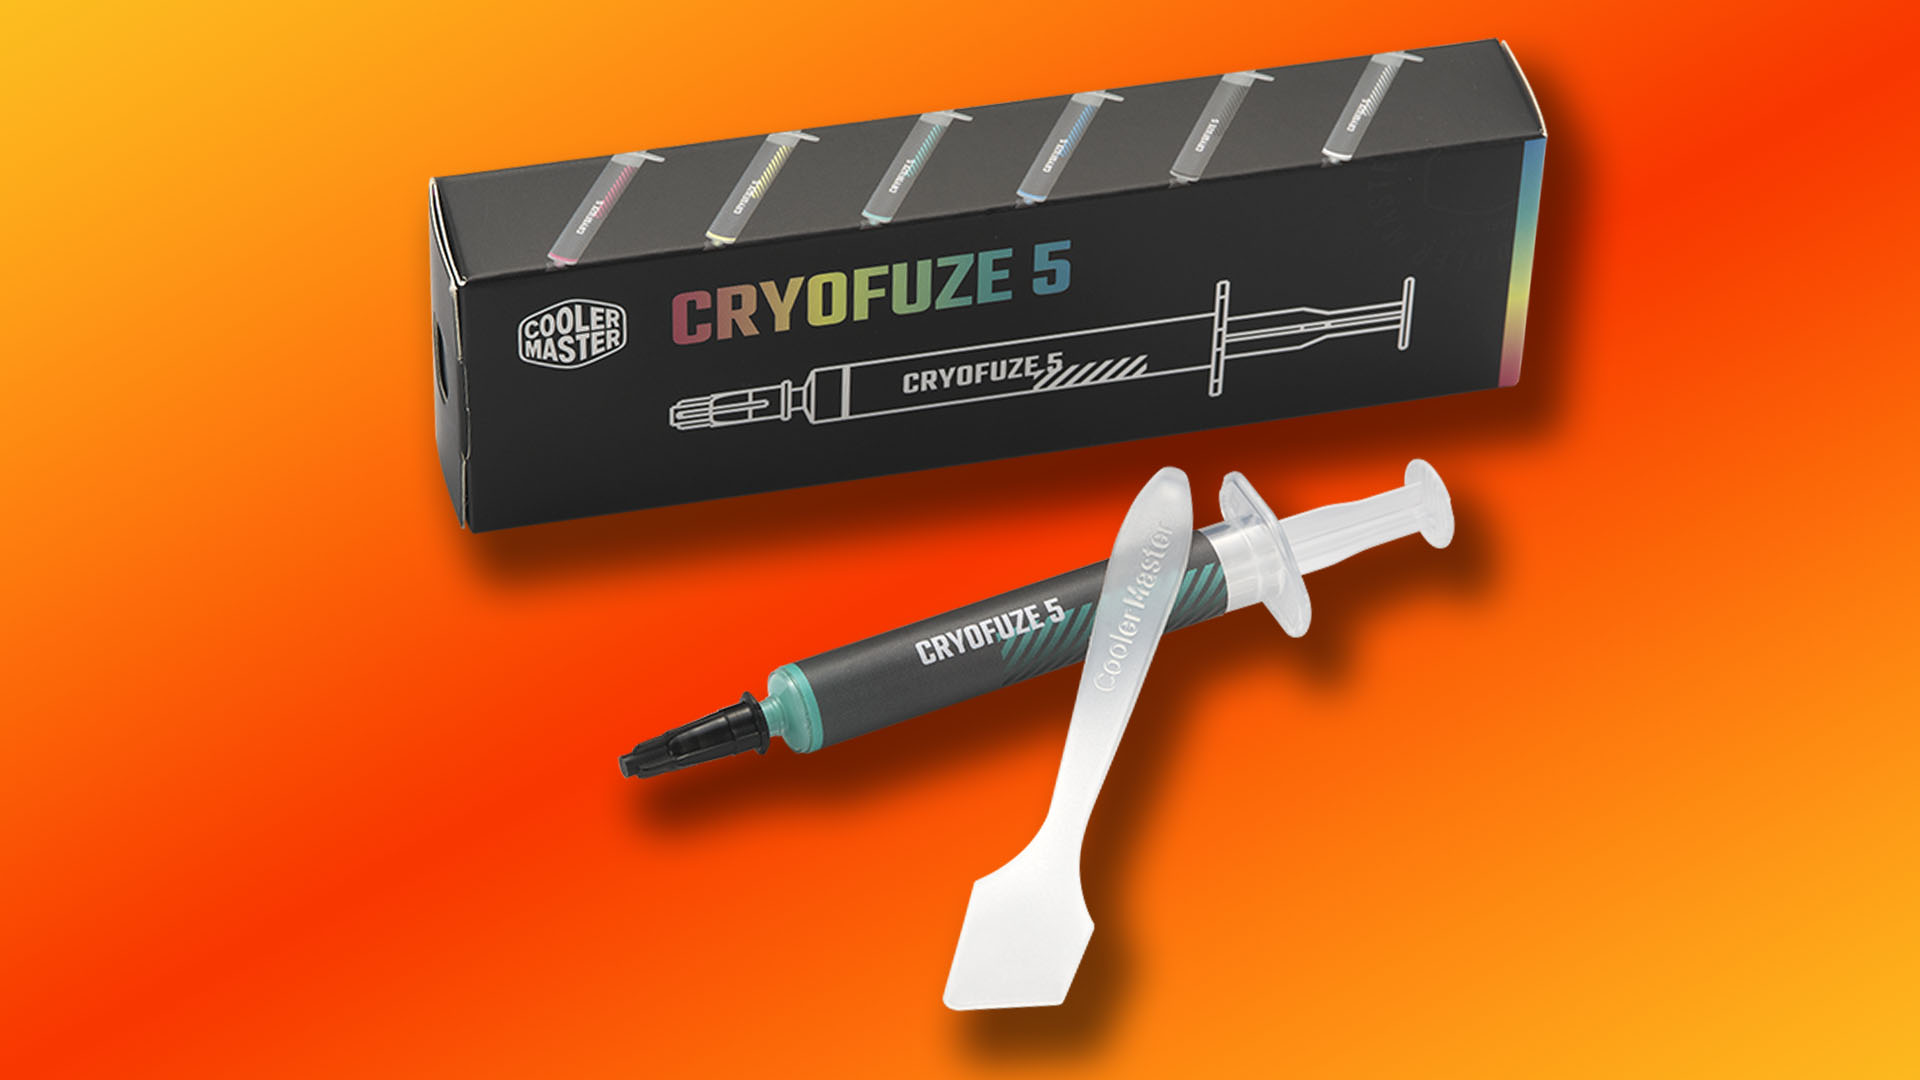 Cooler Master Cryofuze farbige Wärmeleitpaste mit Spatel und Verpackung